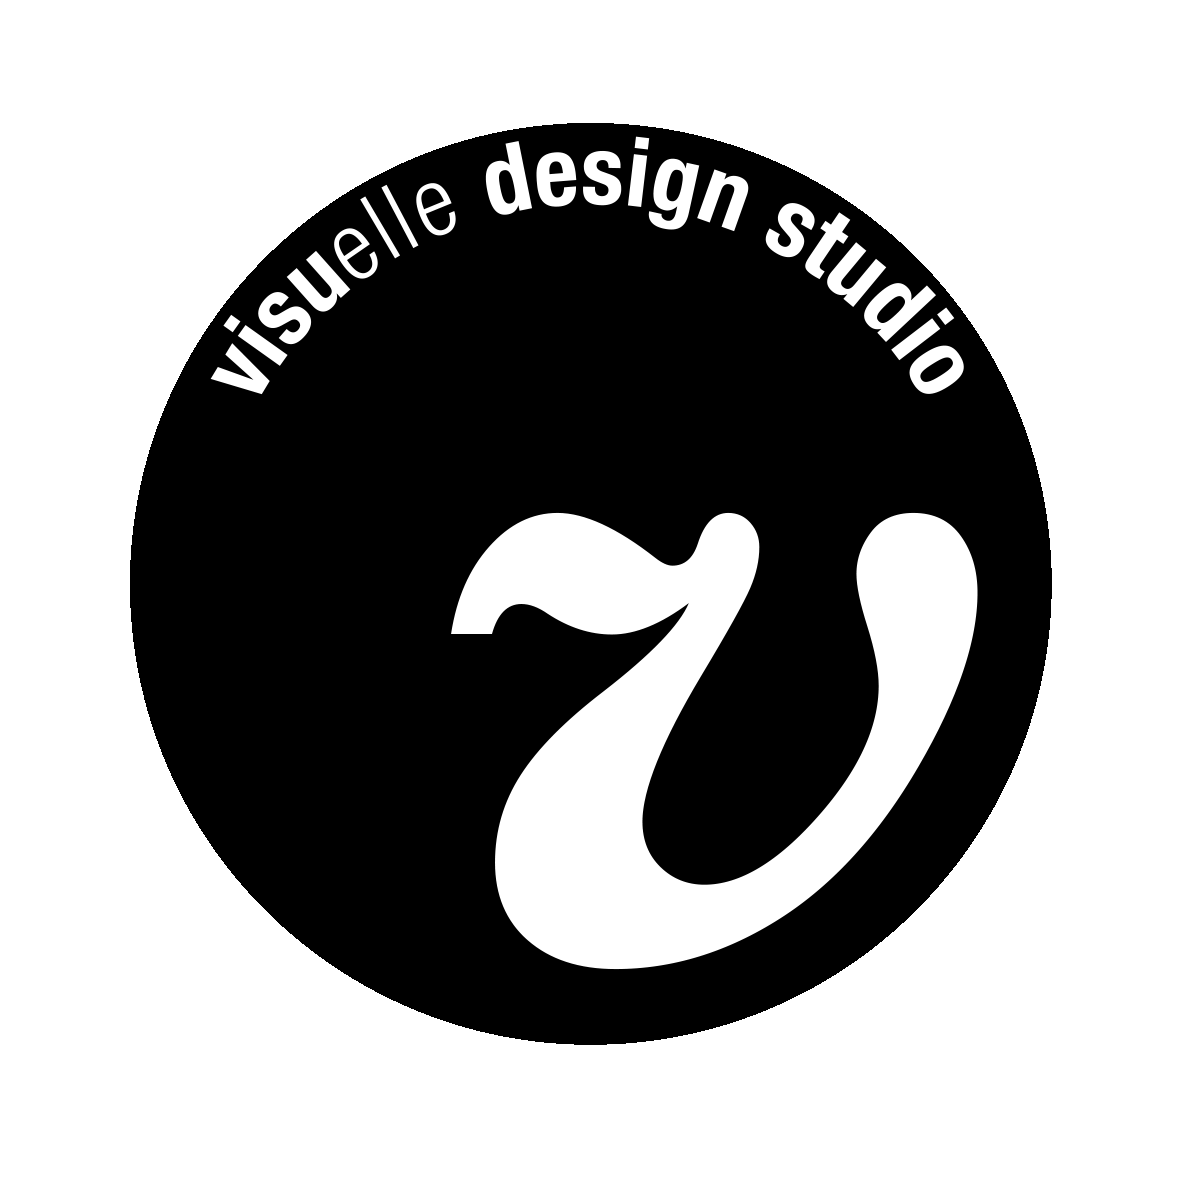 visuelle design studio